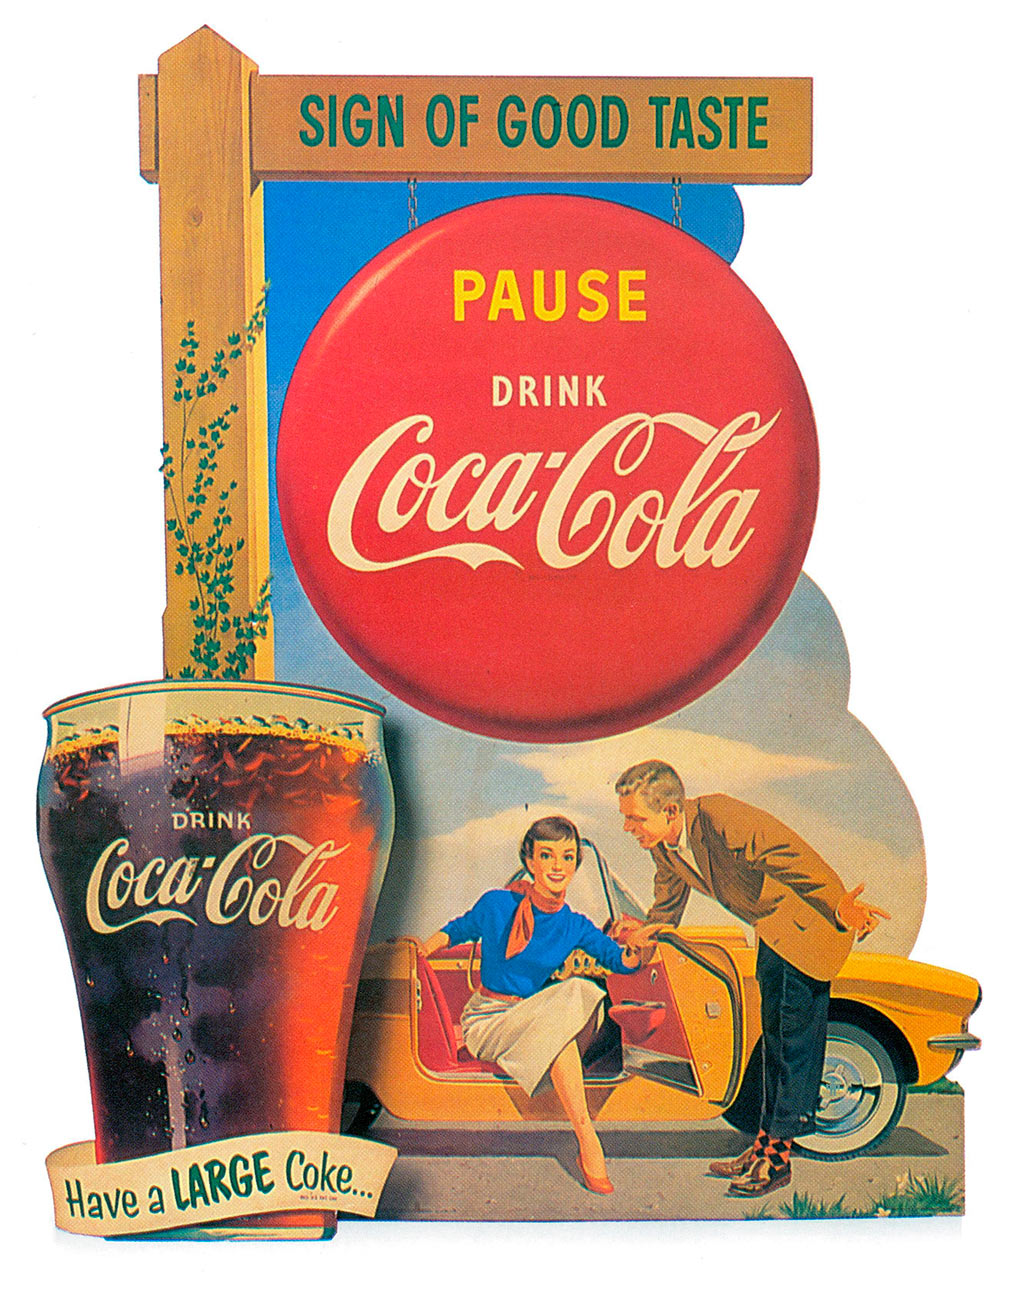 Caixa de publicidade da Coca-Cola